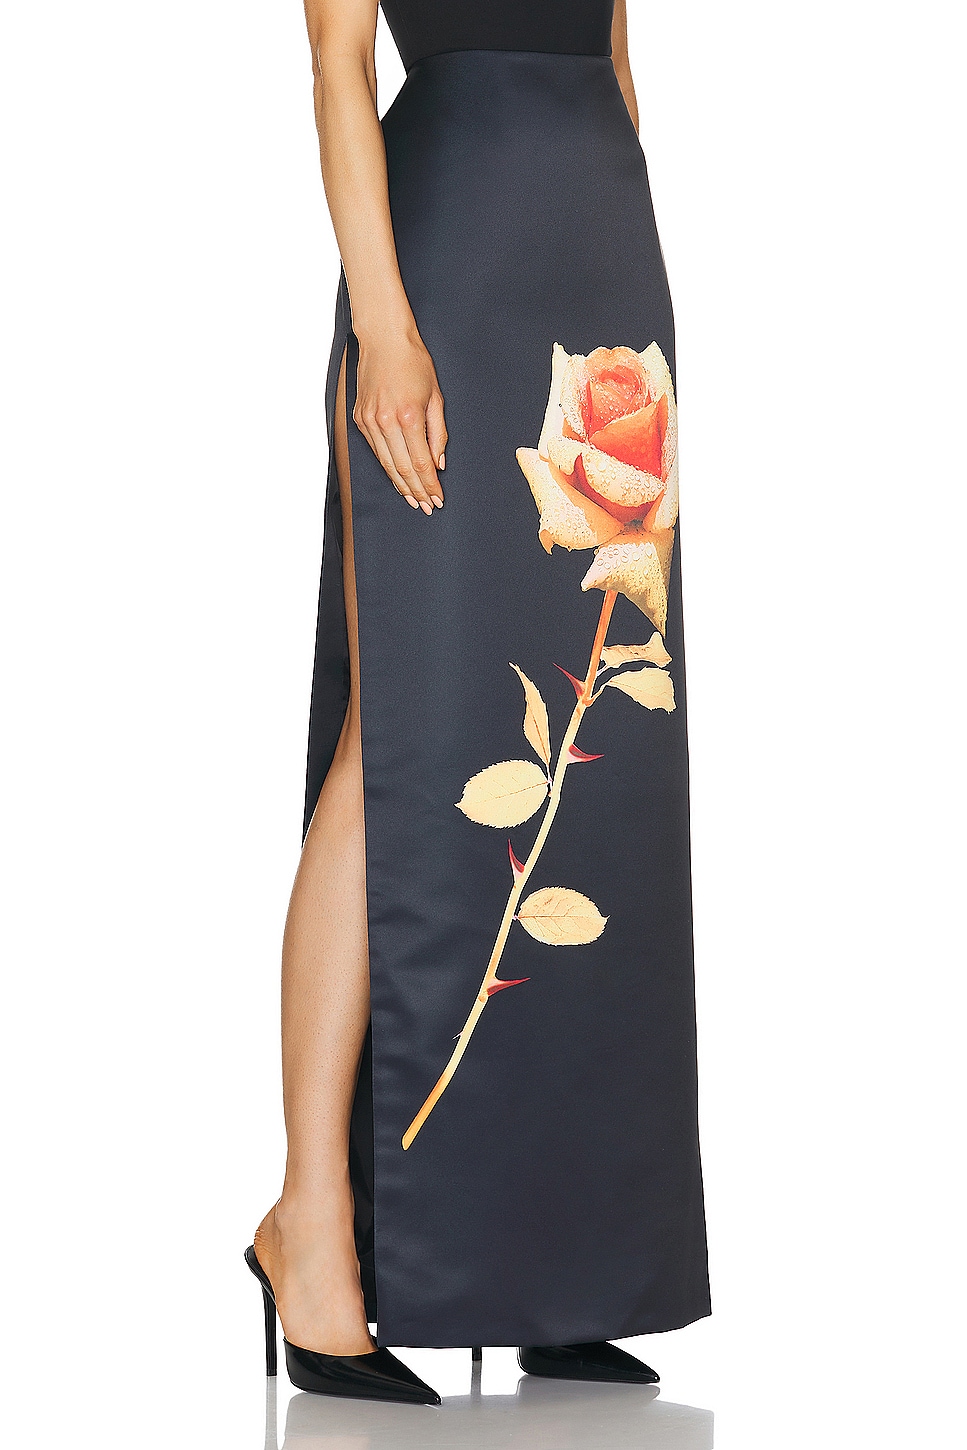 Image 1 of David Koma Rose Flower Print Maxi Skirt in Black & Orange